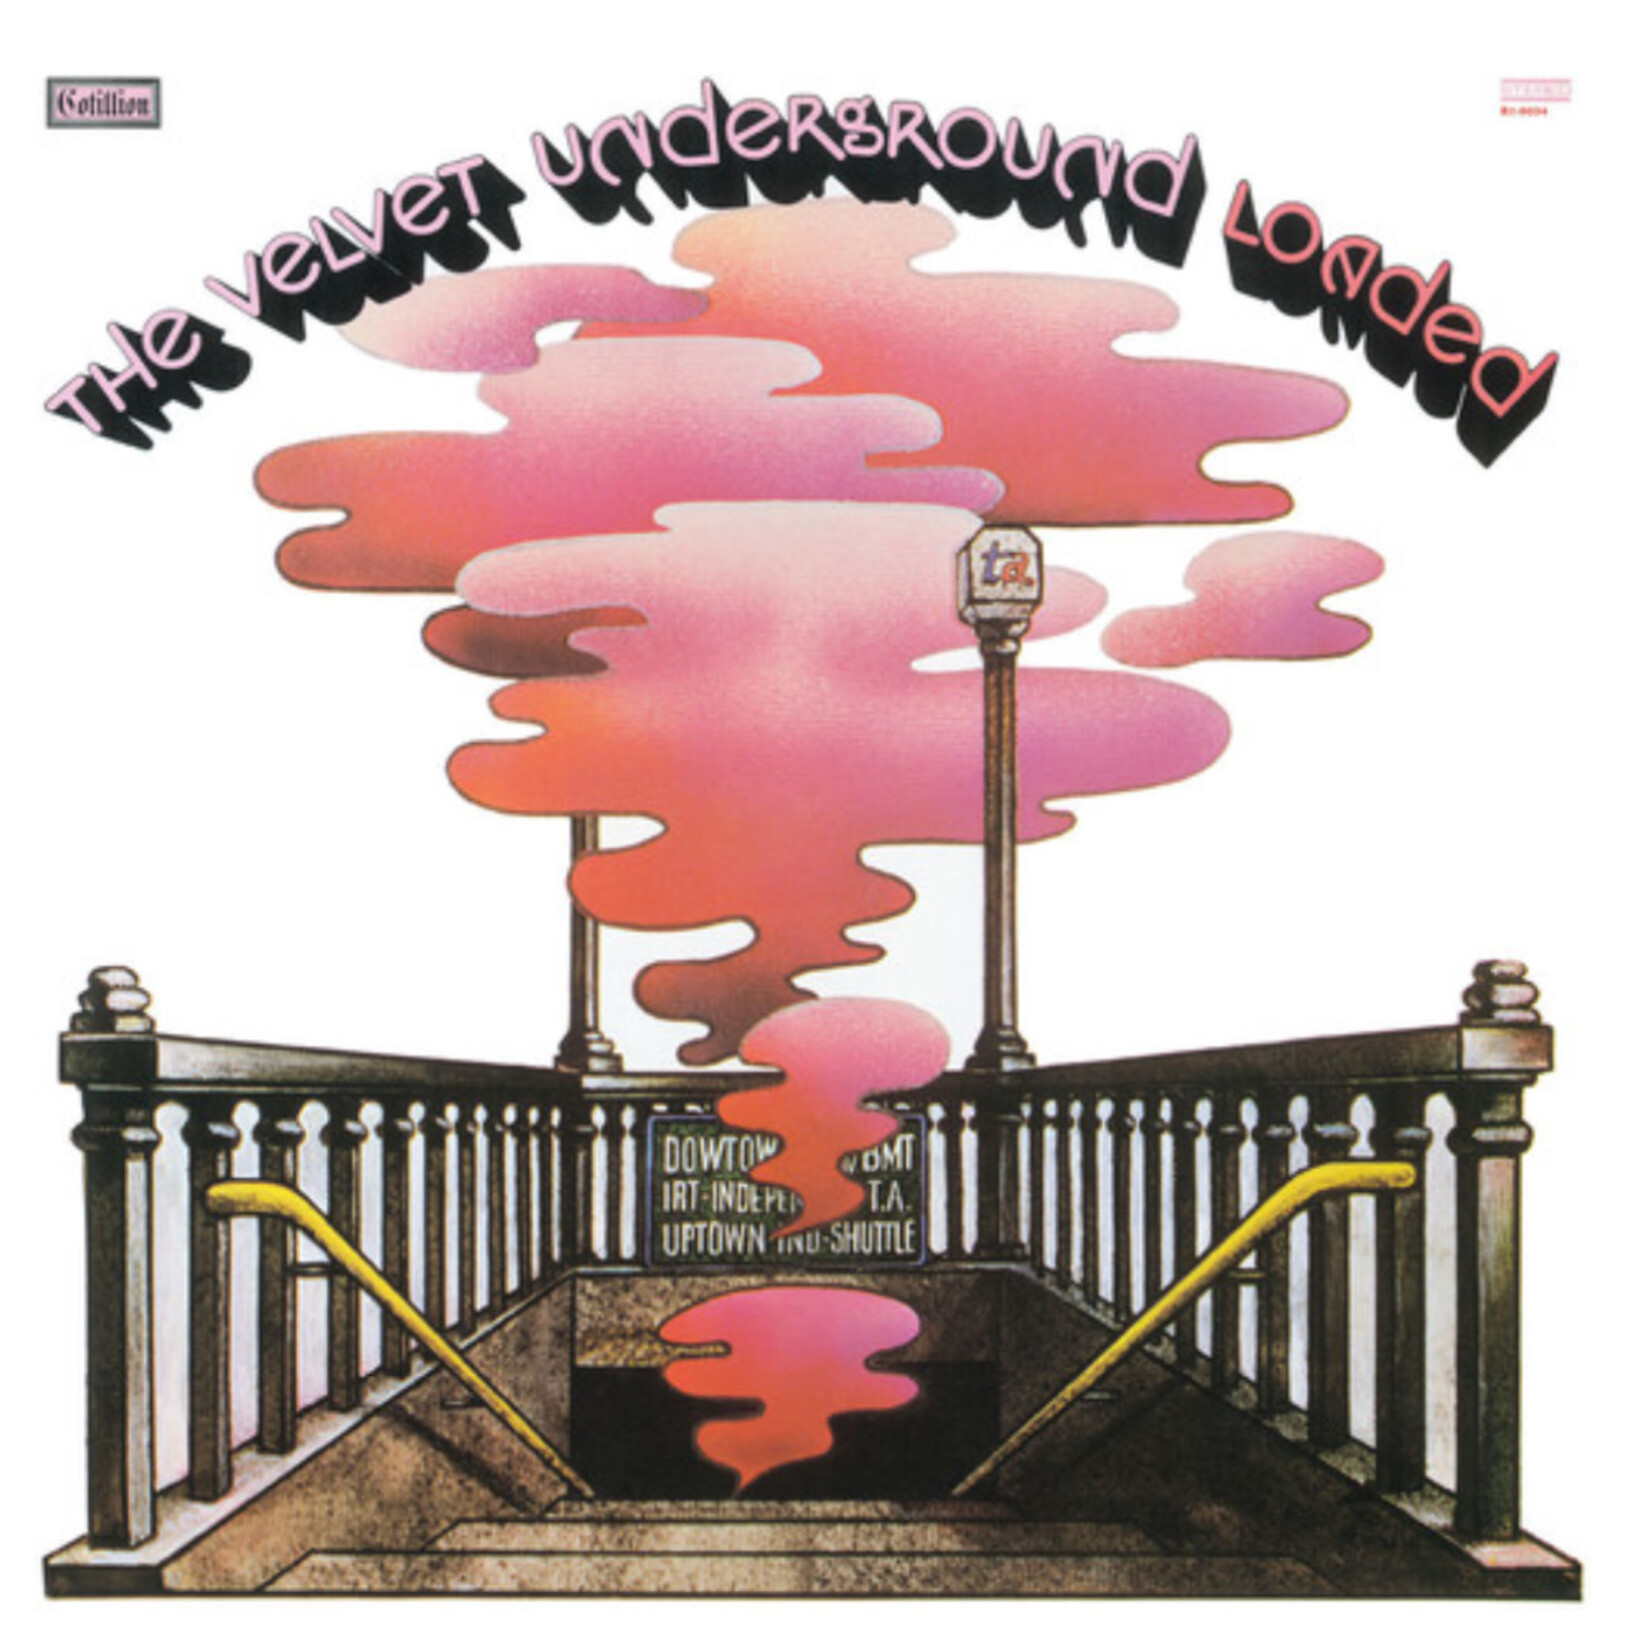 Velvet Underground - Loaded - ATL9034 - Vinyl LP (NEW)